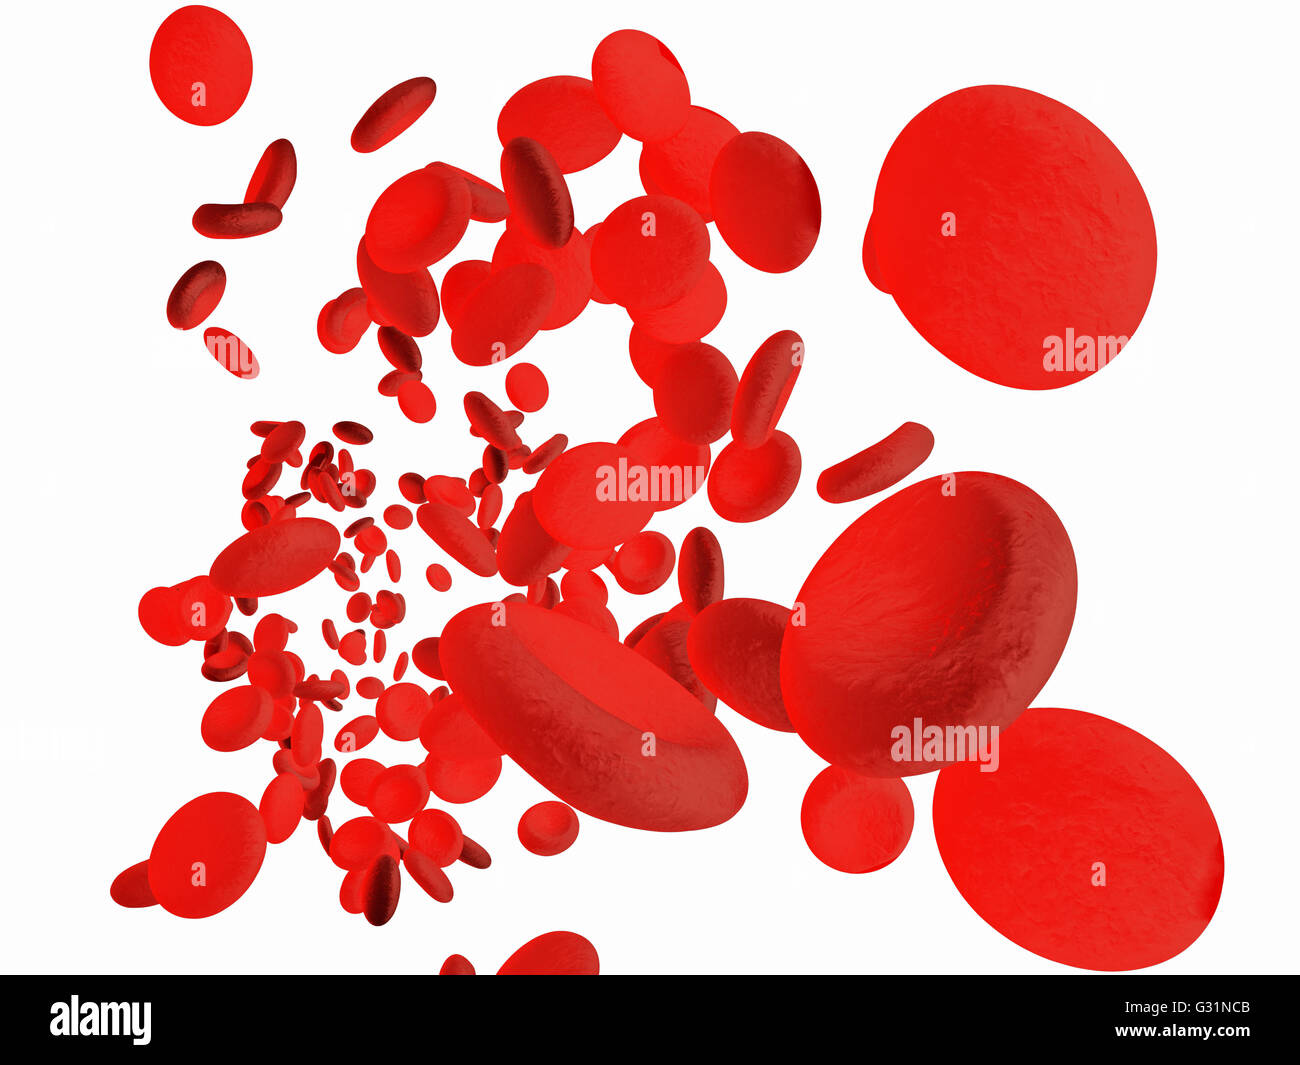 Les érythrocytes globules rouges dans l'intérieur des artères ou des vaisseaux sanguins capillaires. Montrant des cellules endothéliales et le débit sanguin ou stre Banque D'Images